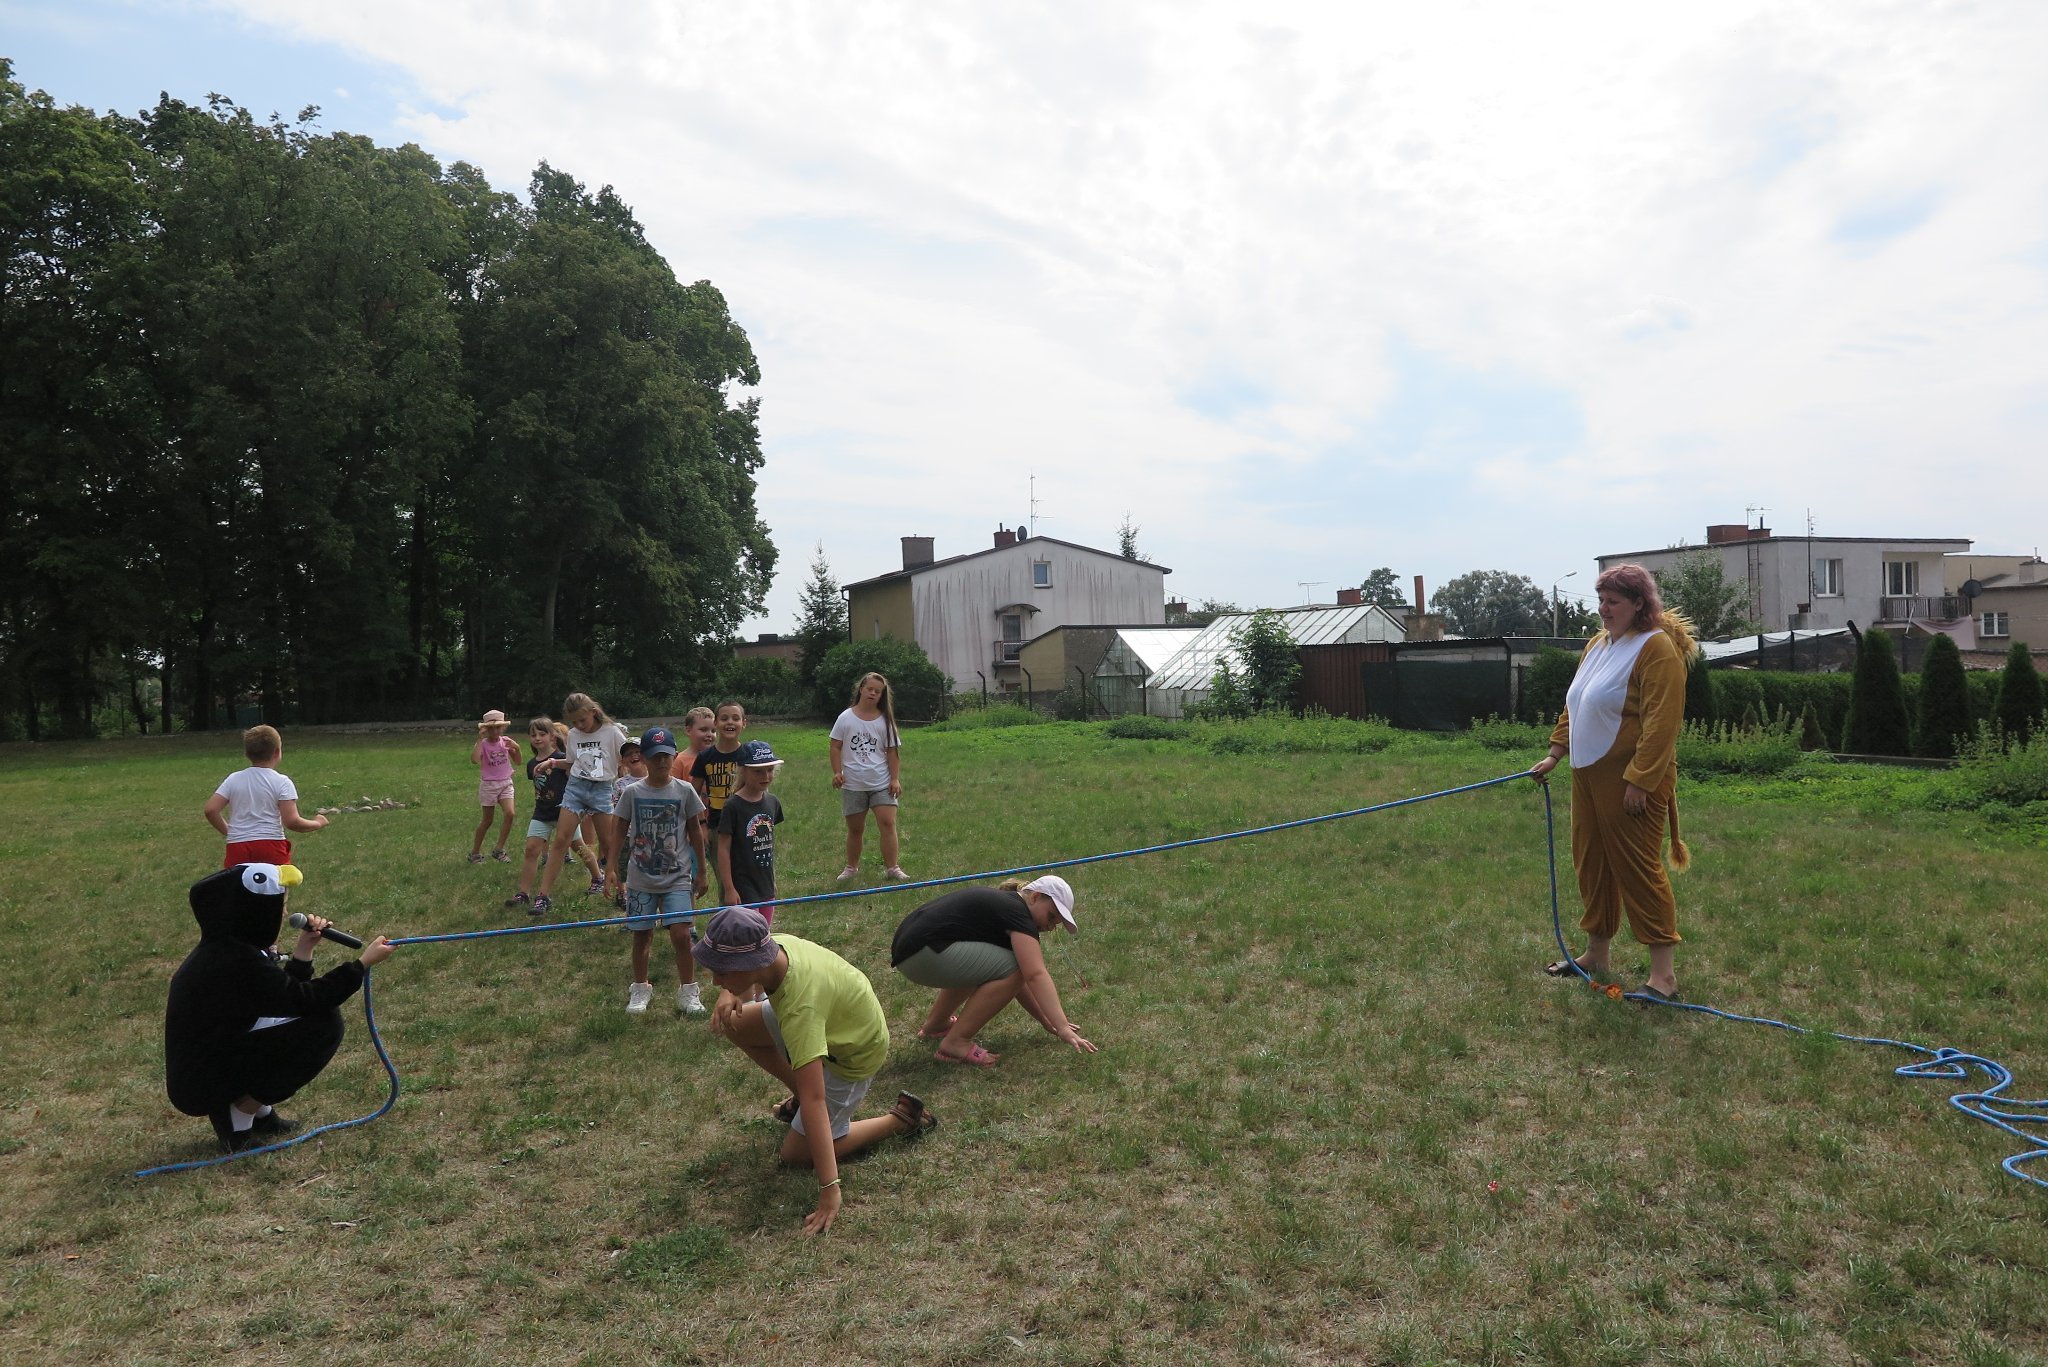 aktorzy stoją na trawie, trzymając rozciągniętą skakankę pod którą przechodzą dzieci